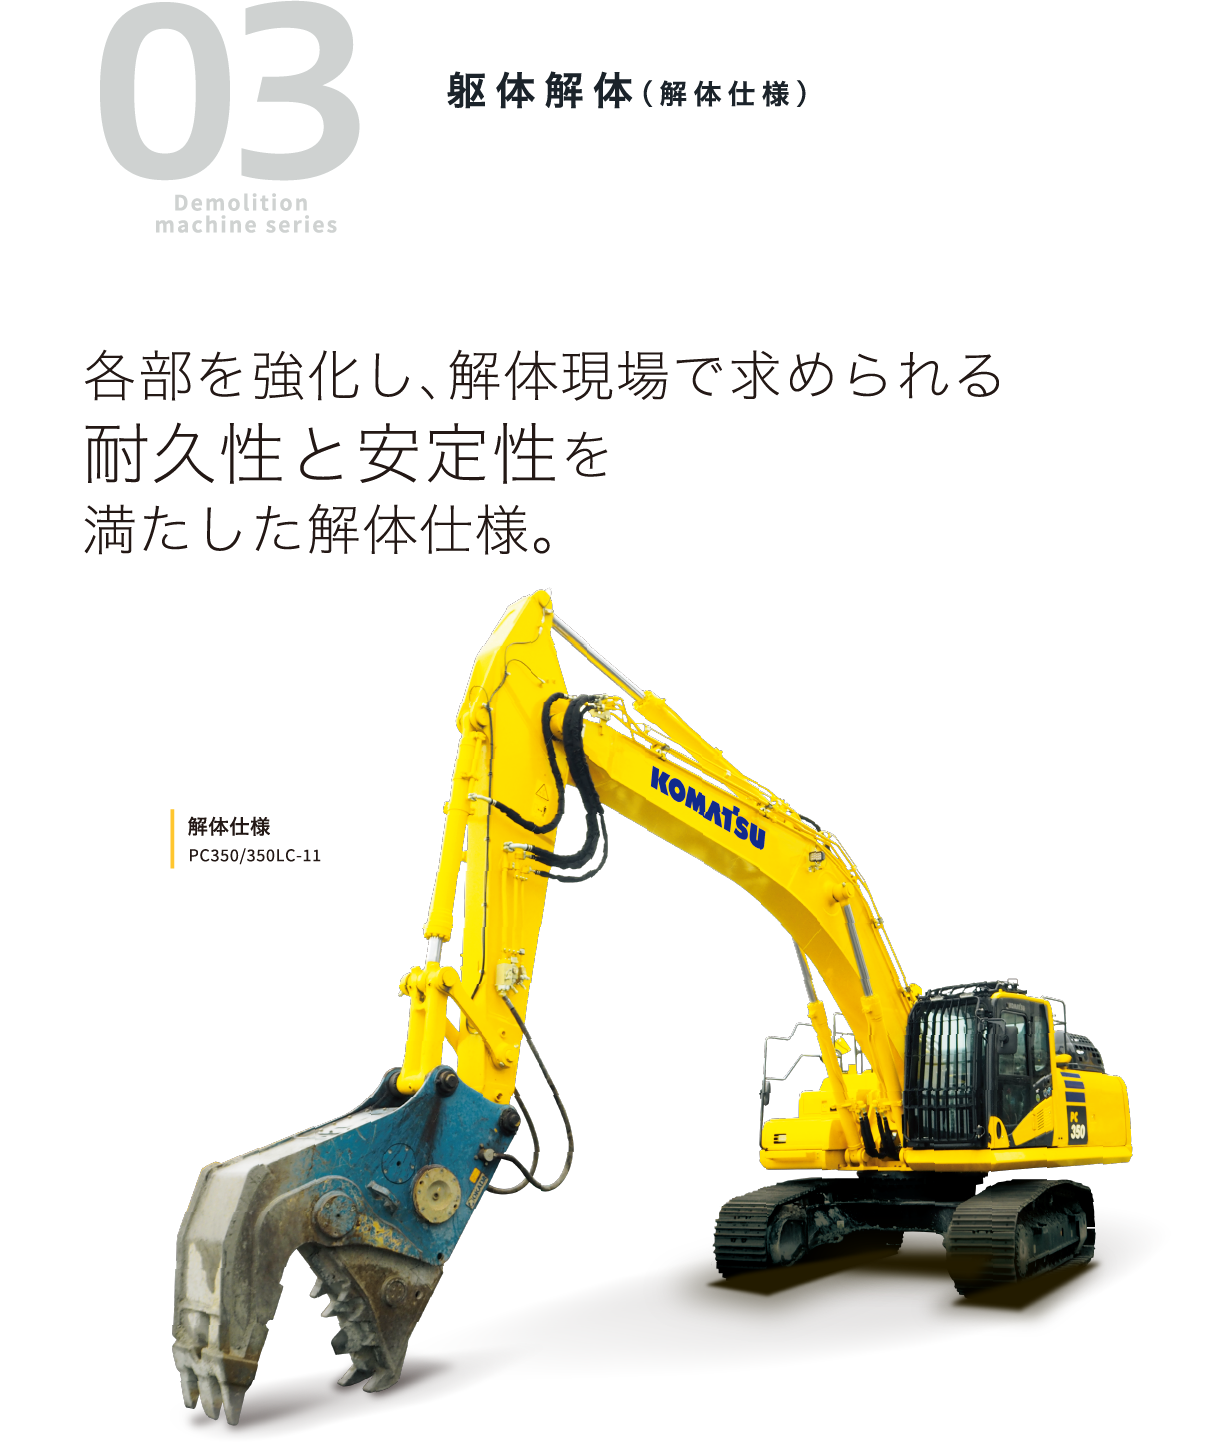 03 Demolition machine series 躯体解体（解体仕様）各部を強化し、解体現場で求められる耐久性と安定性を満たした解体仕様。解体仕様 PC350/350LC-11